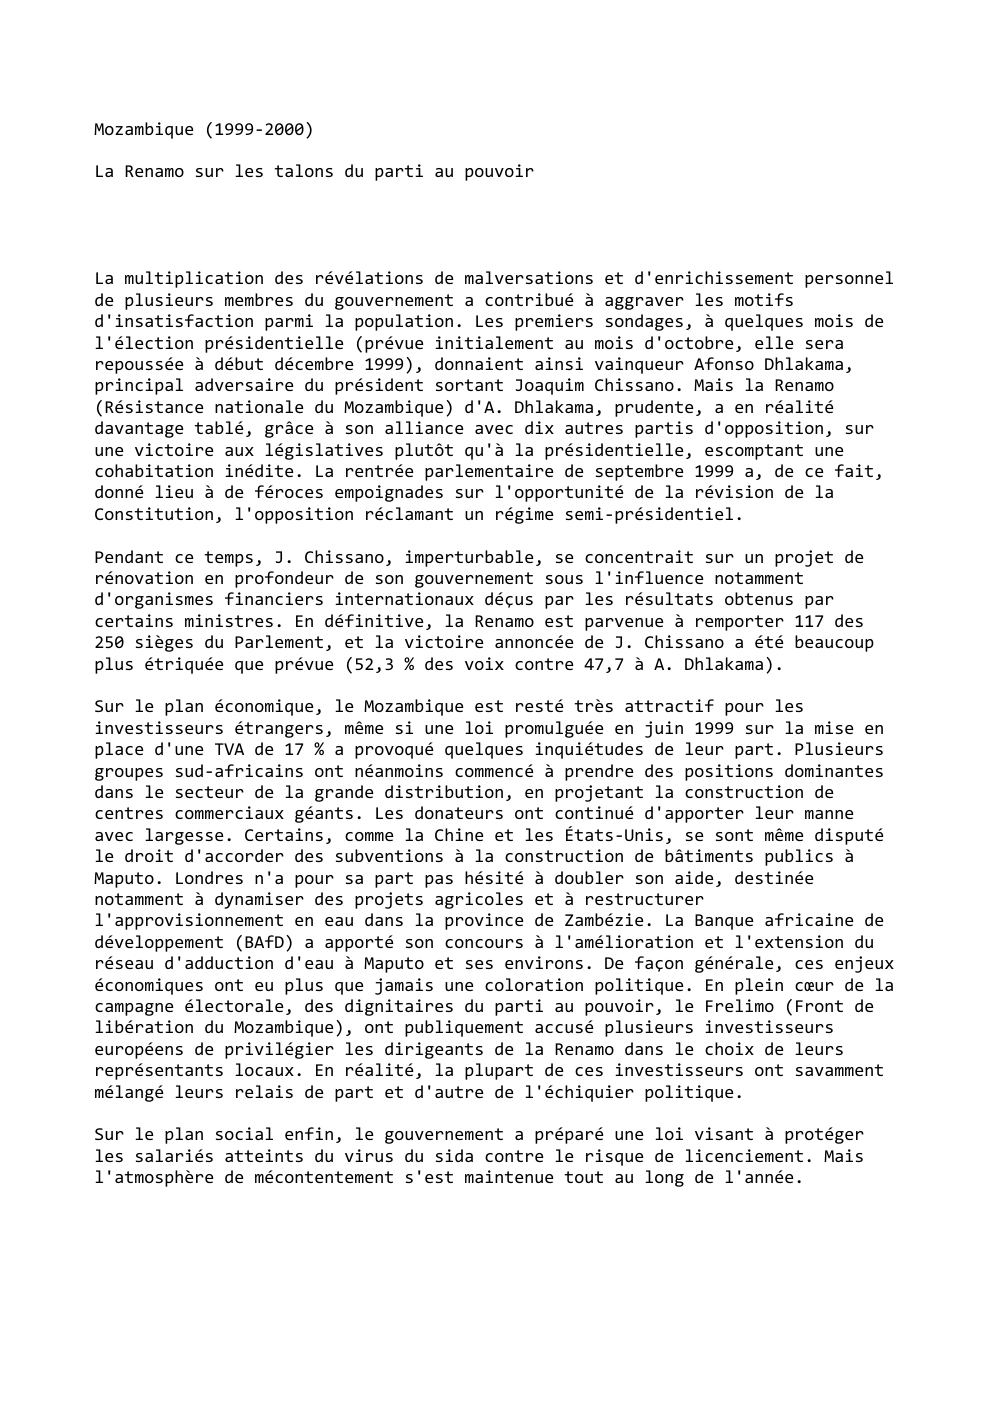 Prévisualisation du document Mozambique (1999-2000)
La Renamo sur les talons du parti au pouvoir

La multiplication des révélations de malversations et d'enrichissement personnel...